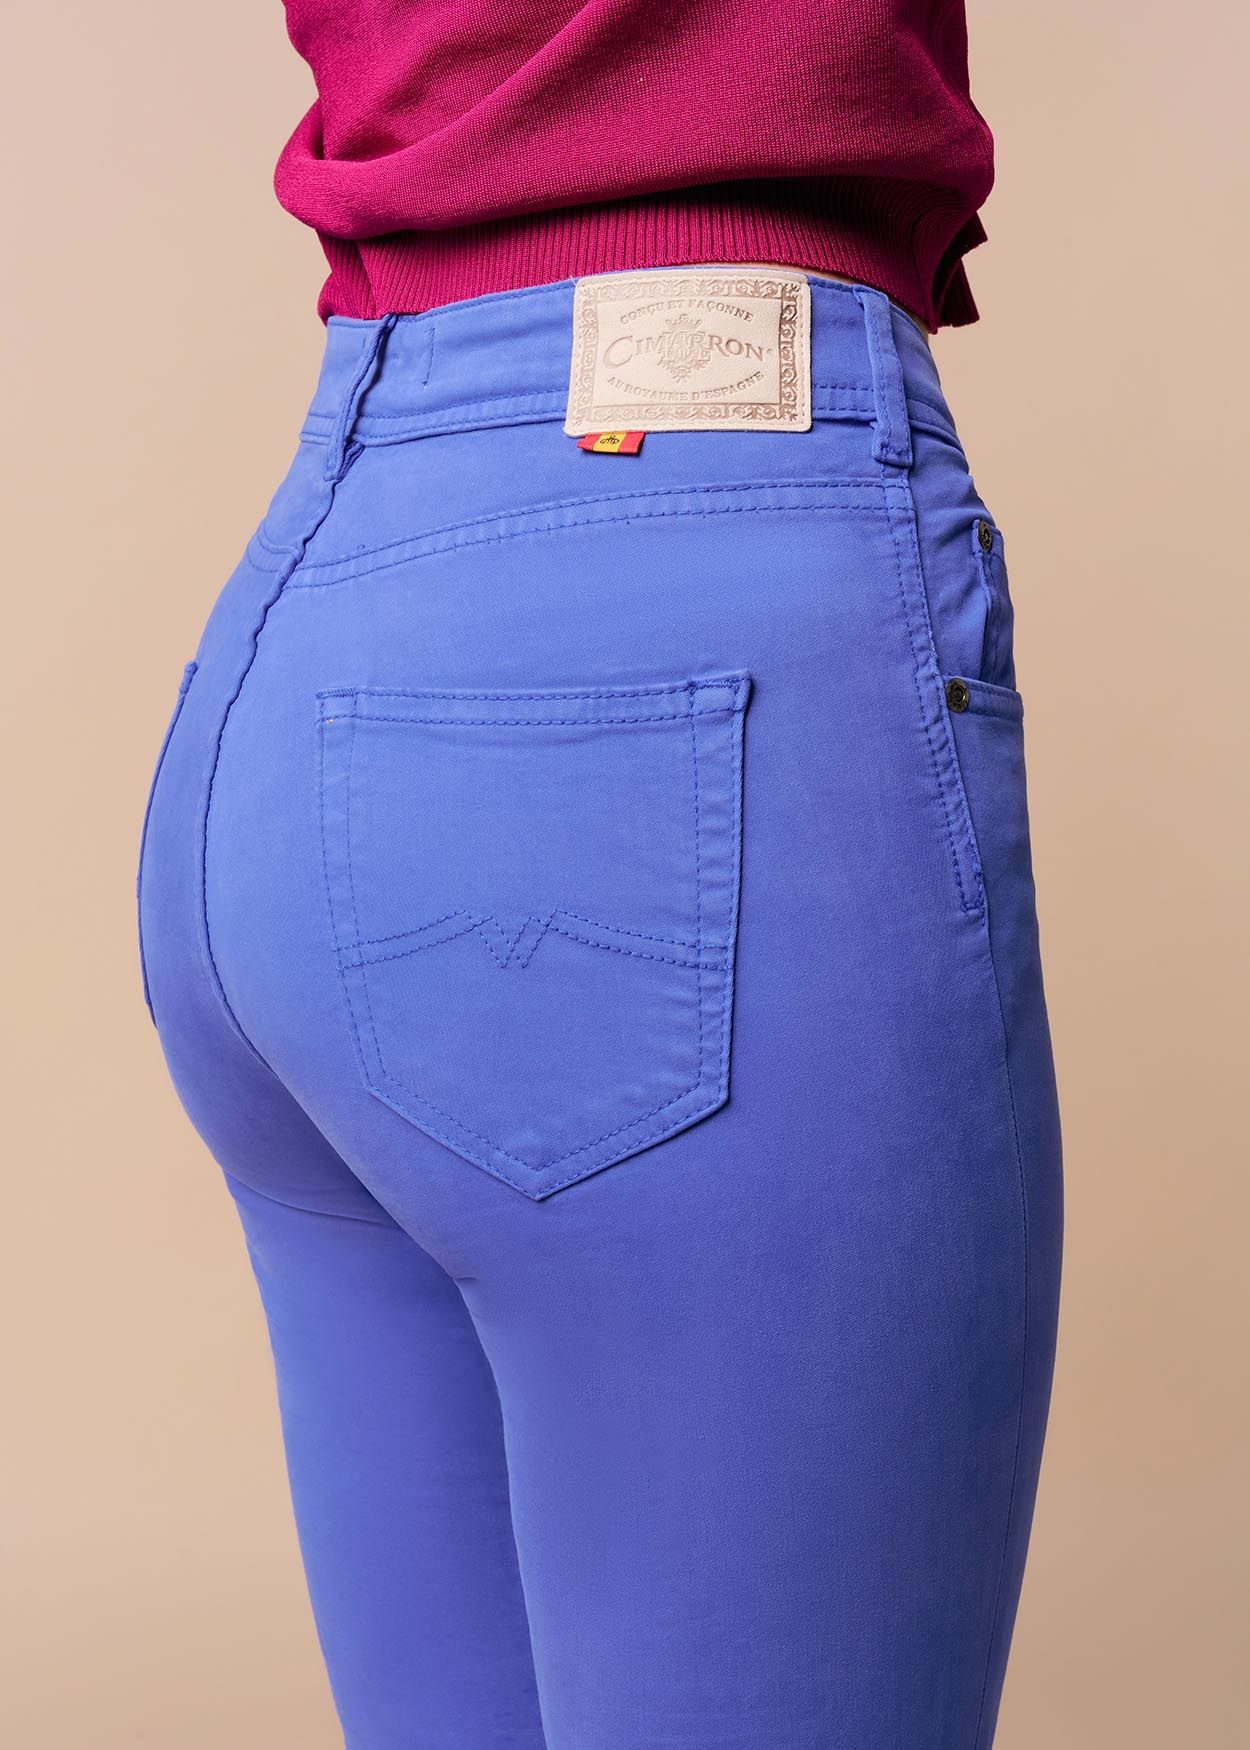 Pantalon Couleur Nouflore-Quin | Taille naturelle - Slim | Taille en pouces Cimarron